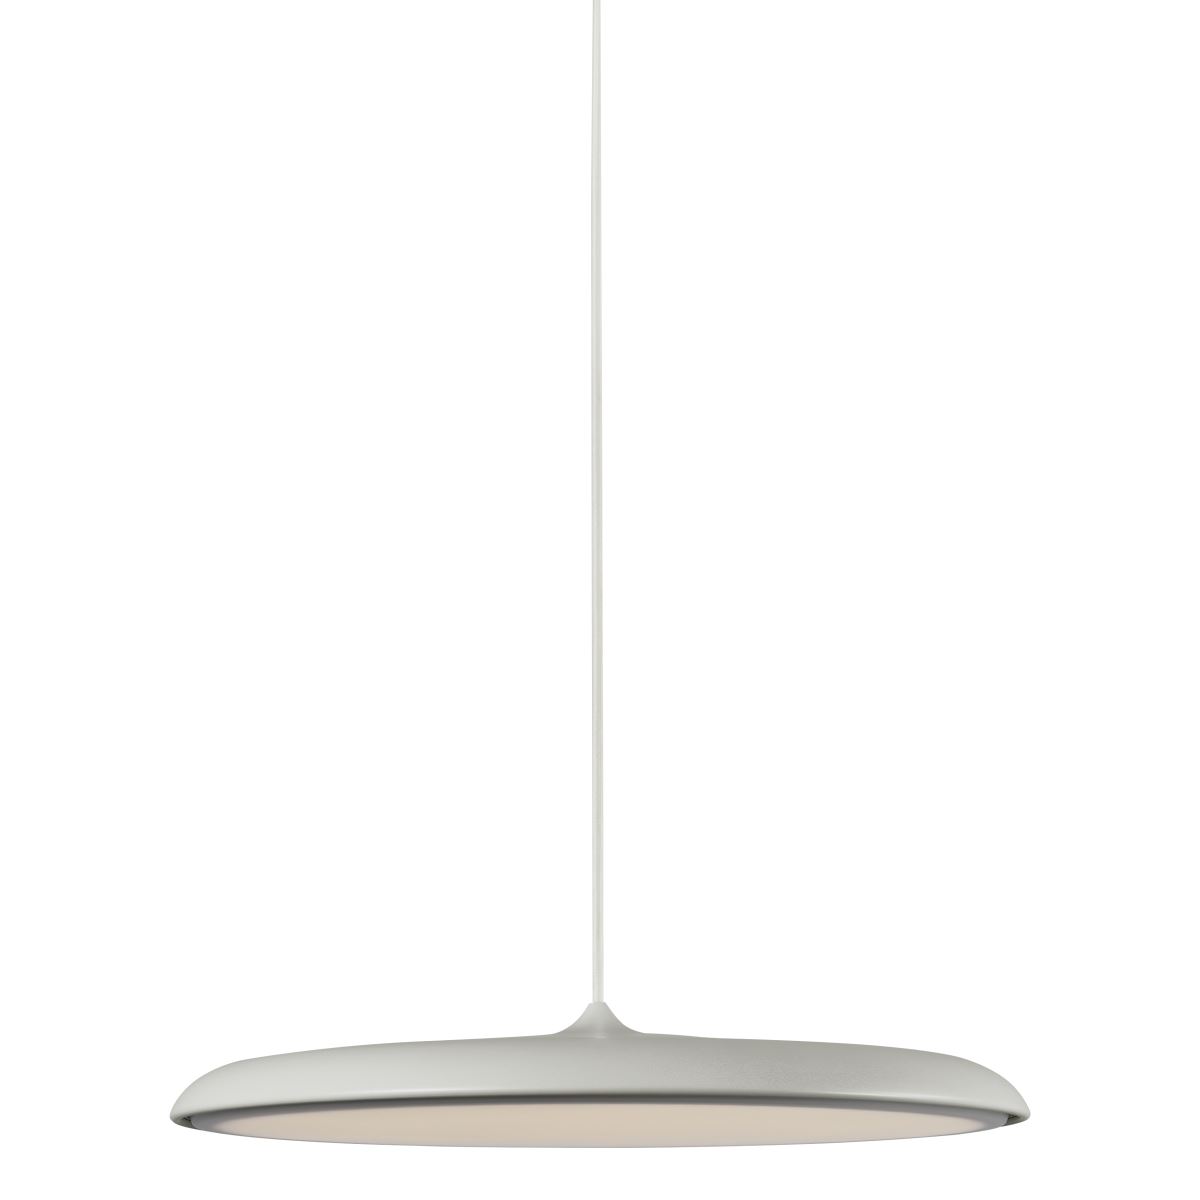 andere Design und Hängelampen Möbel Lampen bei the Online for von kaufen People. &